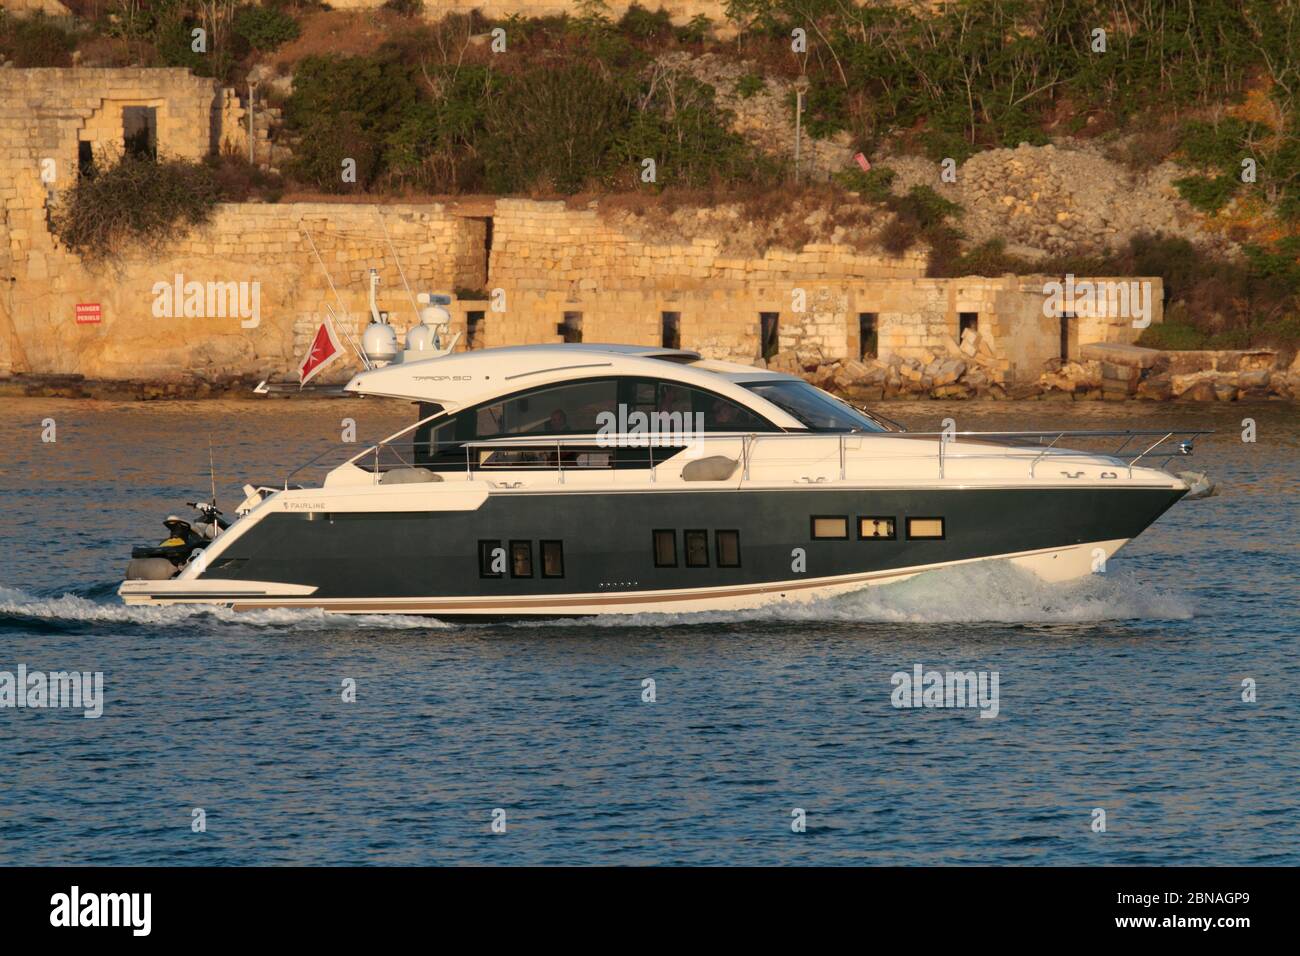 Fairline Targa 50 large luxury motor yacht entering Marsamxett harbour, Malta. Stock Photo